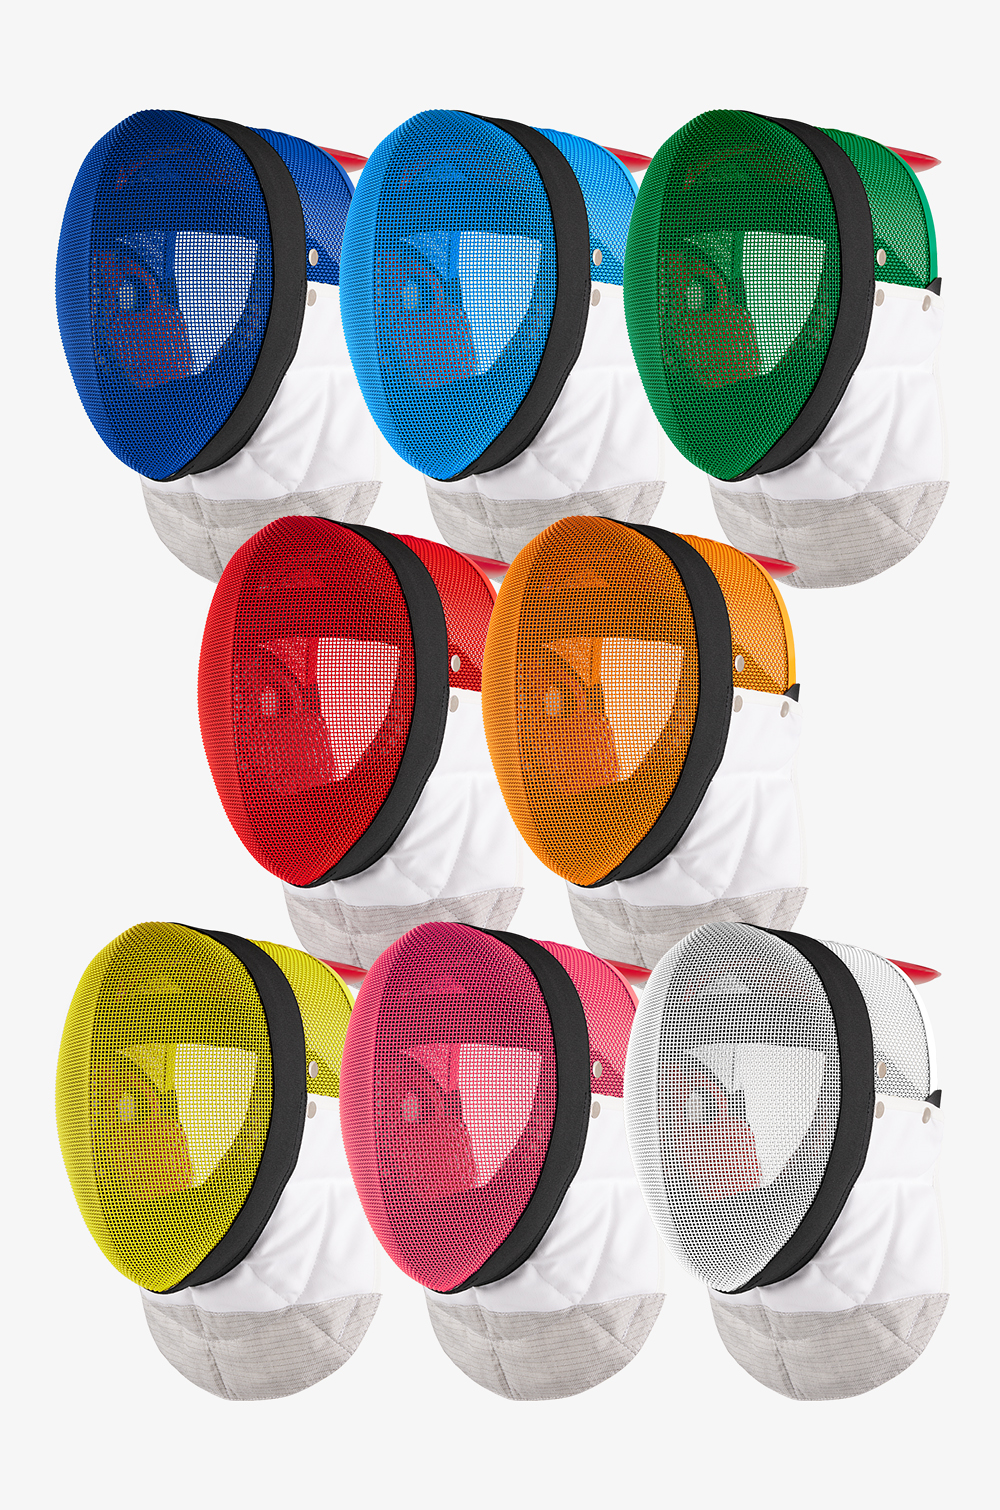 Colorierte Comfort FIE-Florettmaske